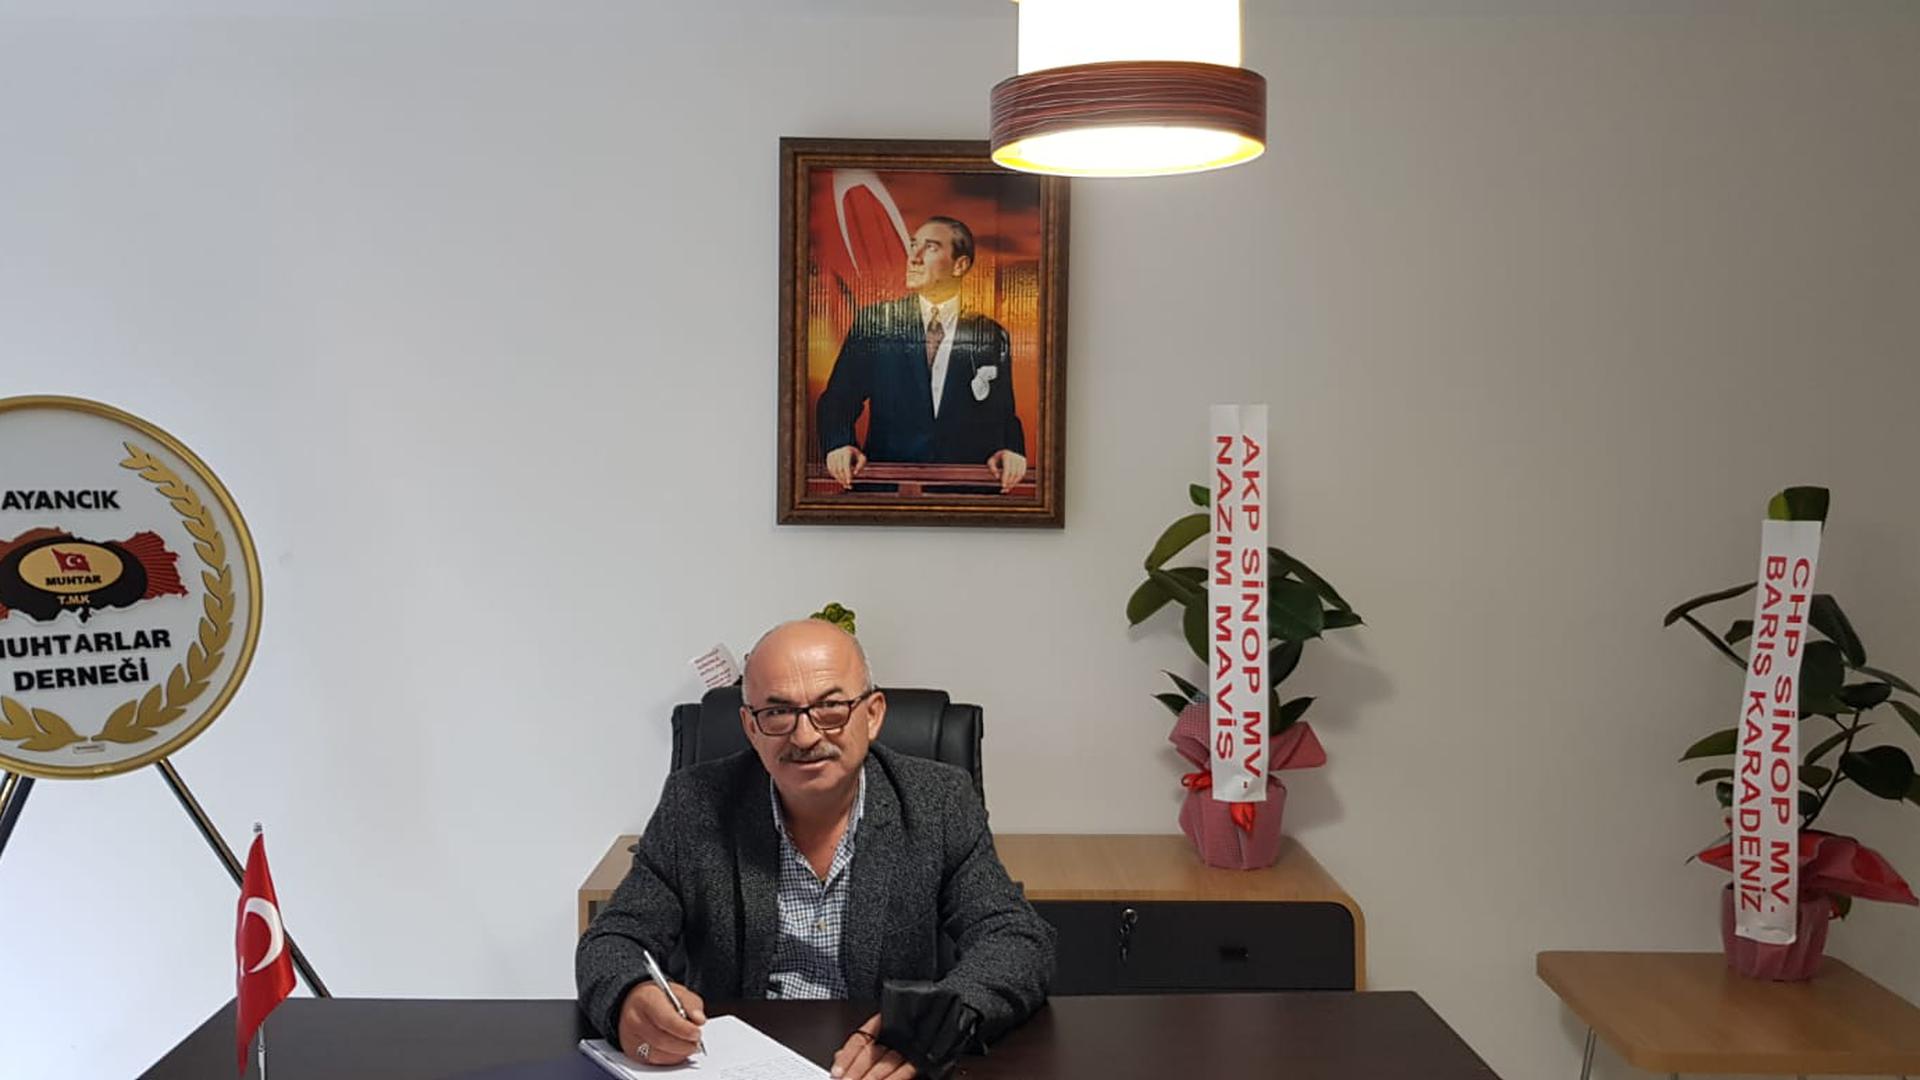 Staatstragend: Salim Altikulac in seinem Büro in Dedeagaç Köyü. Nach 22 Jahren in Obertsrot ist er 2018 in sein türkisches Heimatdorf zurückgekehrt, wo er nur ein Jahr später zum Ortsvorsteher gewählt worden ist.